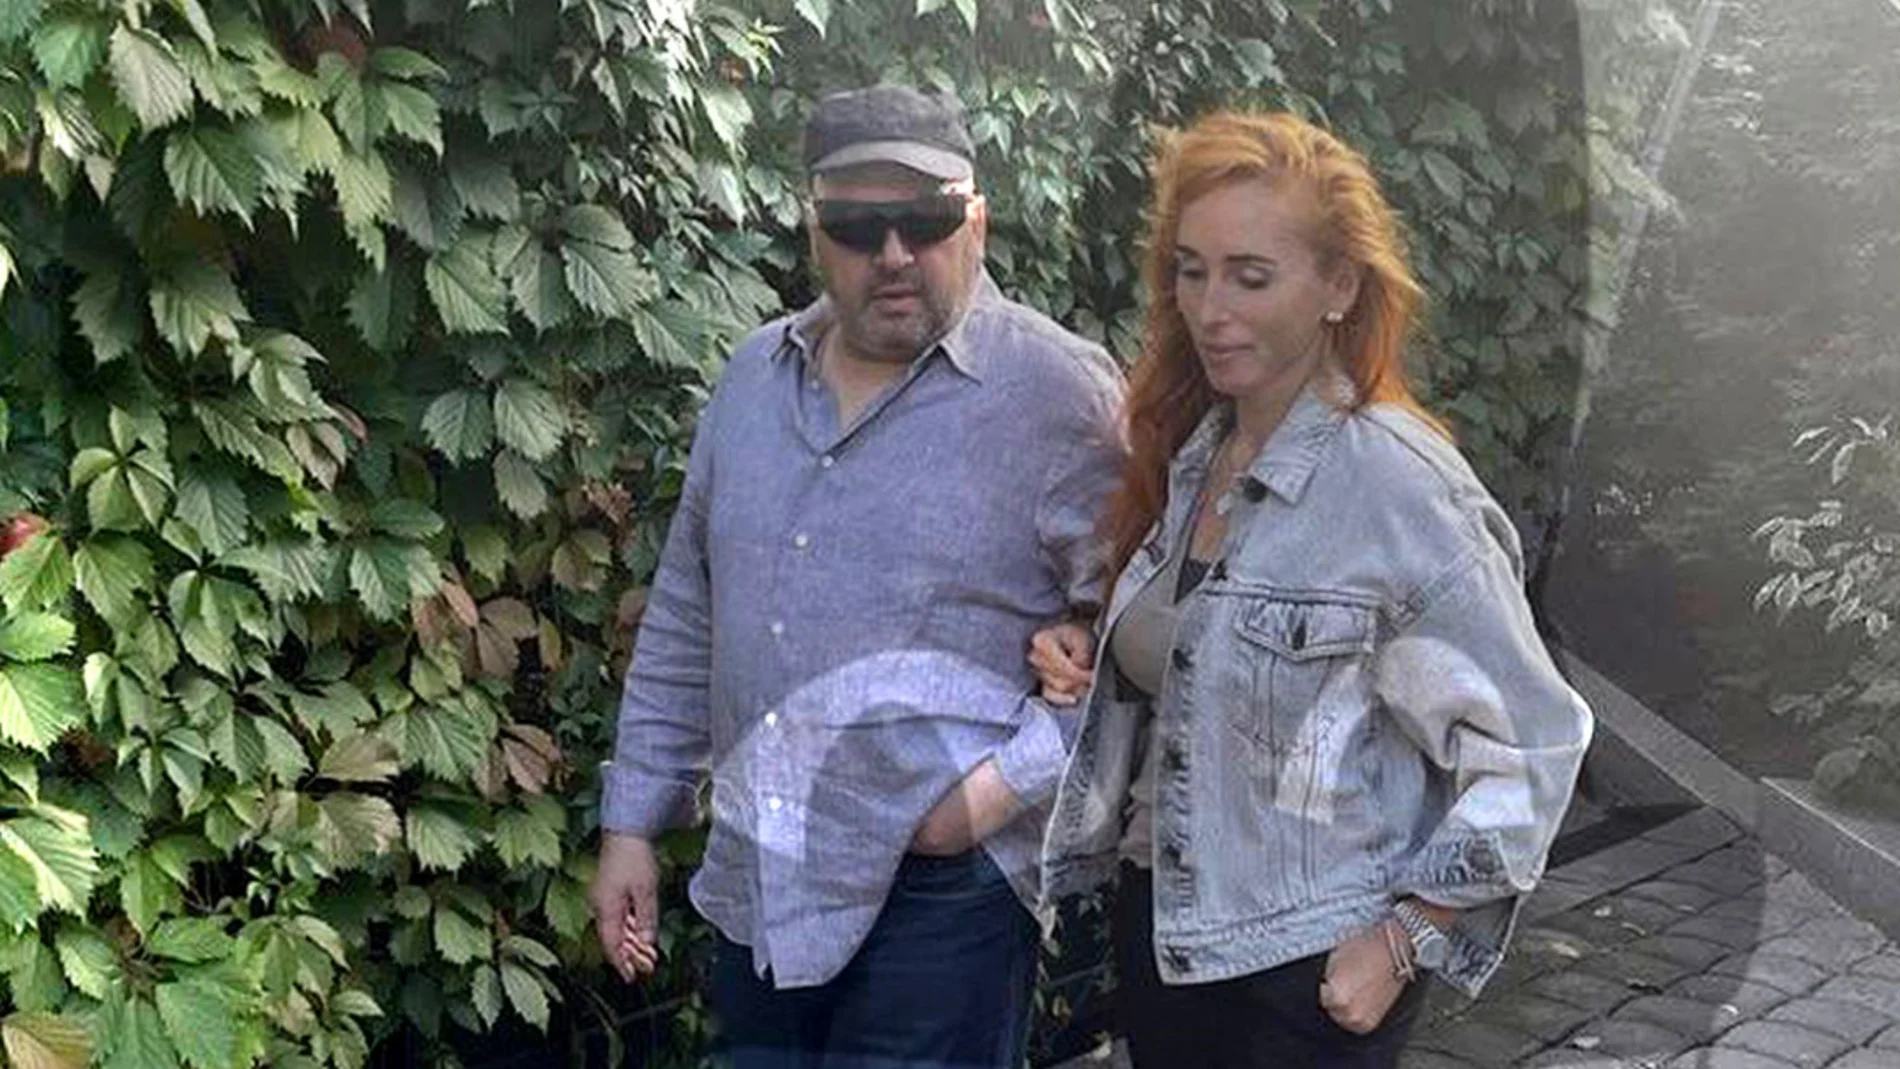 Suroviki, en general ruso caído en desgracia, reaparece en una foto con su mujer en Moscú